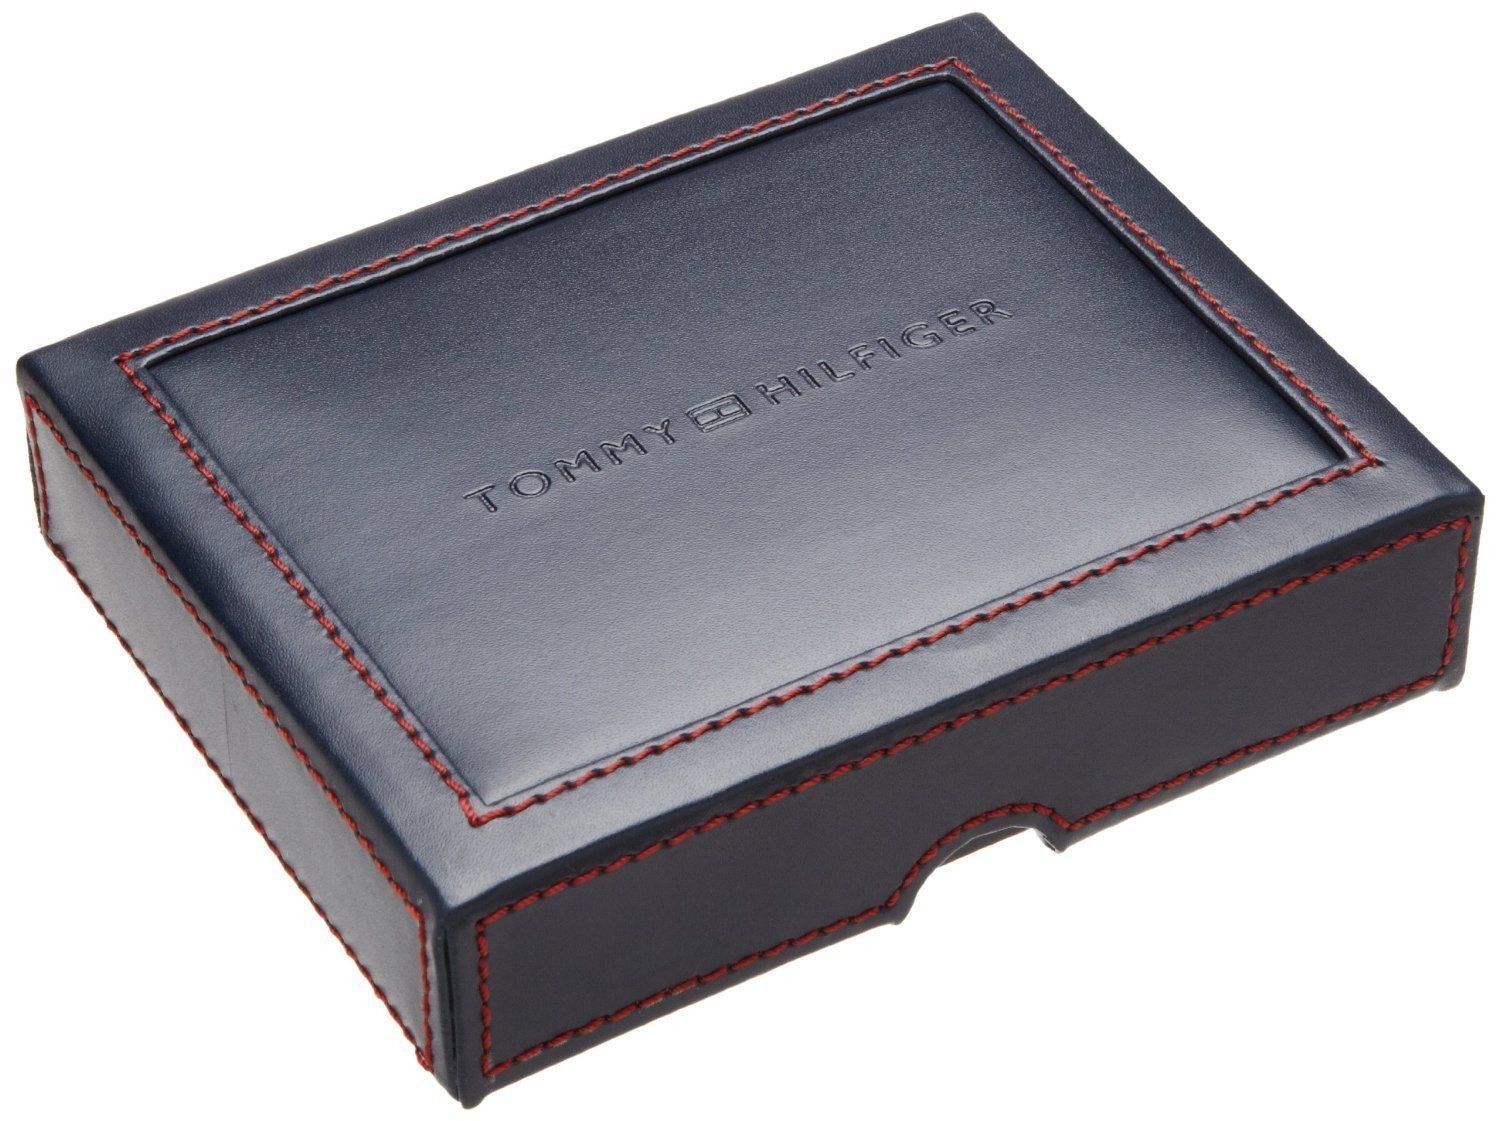 tommy hilfiger leather ranger wallet